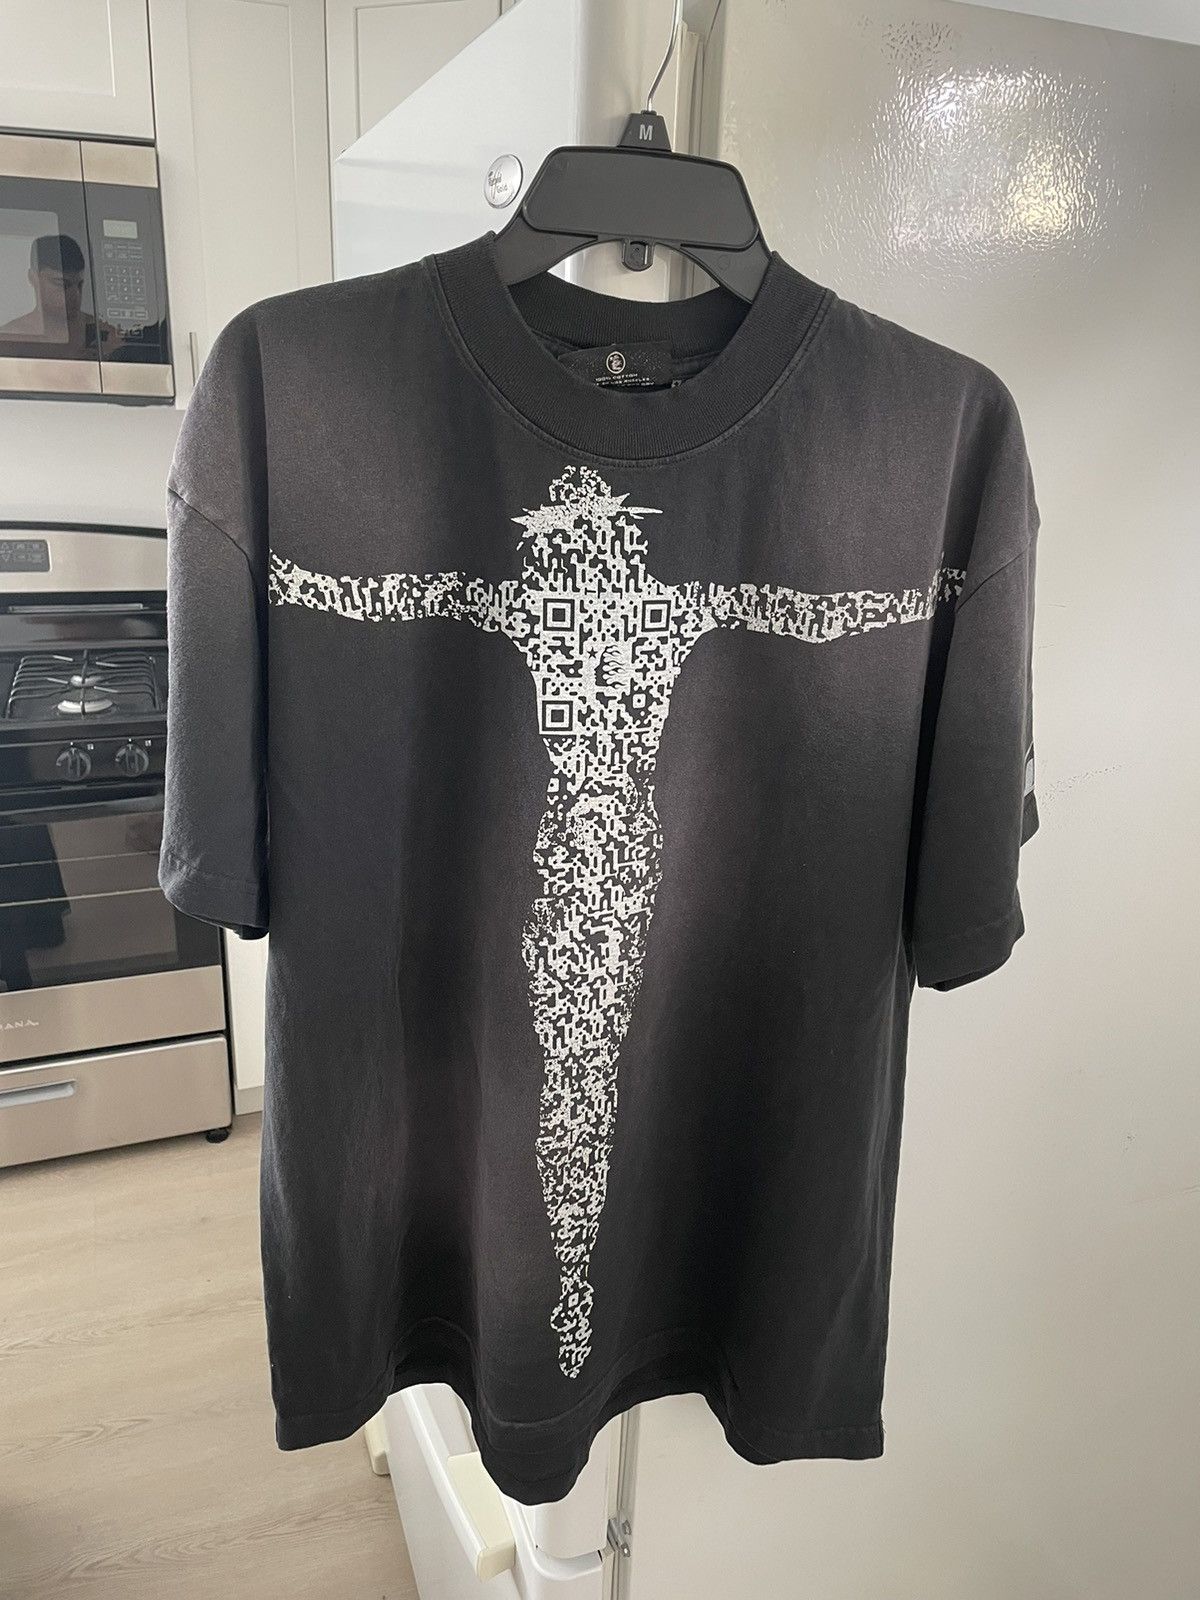 HELLSTAR Hellstar QR Jesus shirt | Grailed